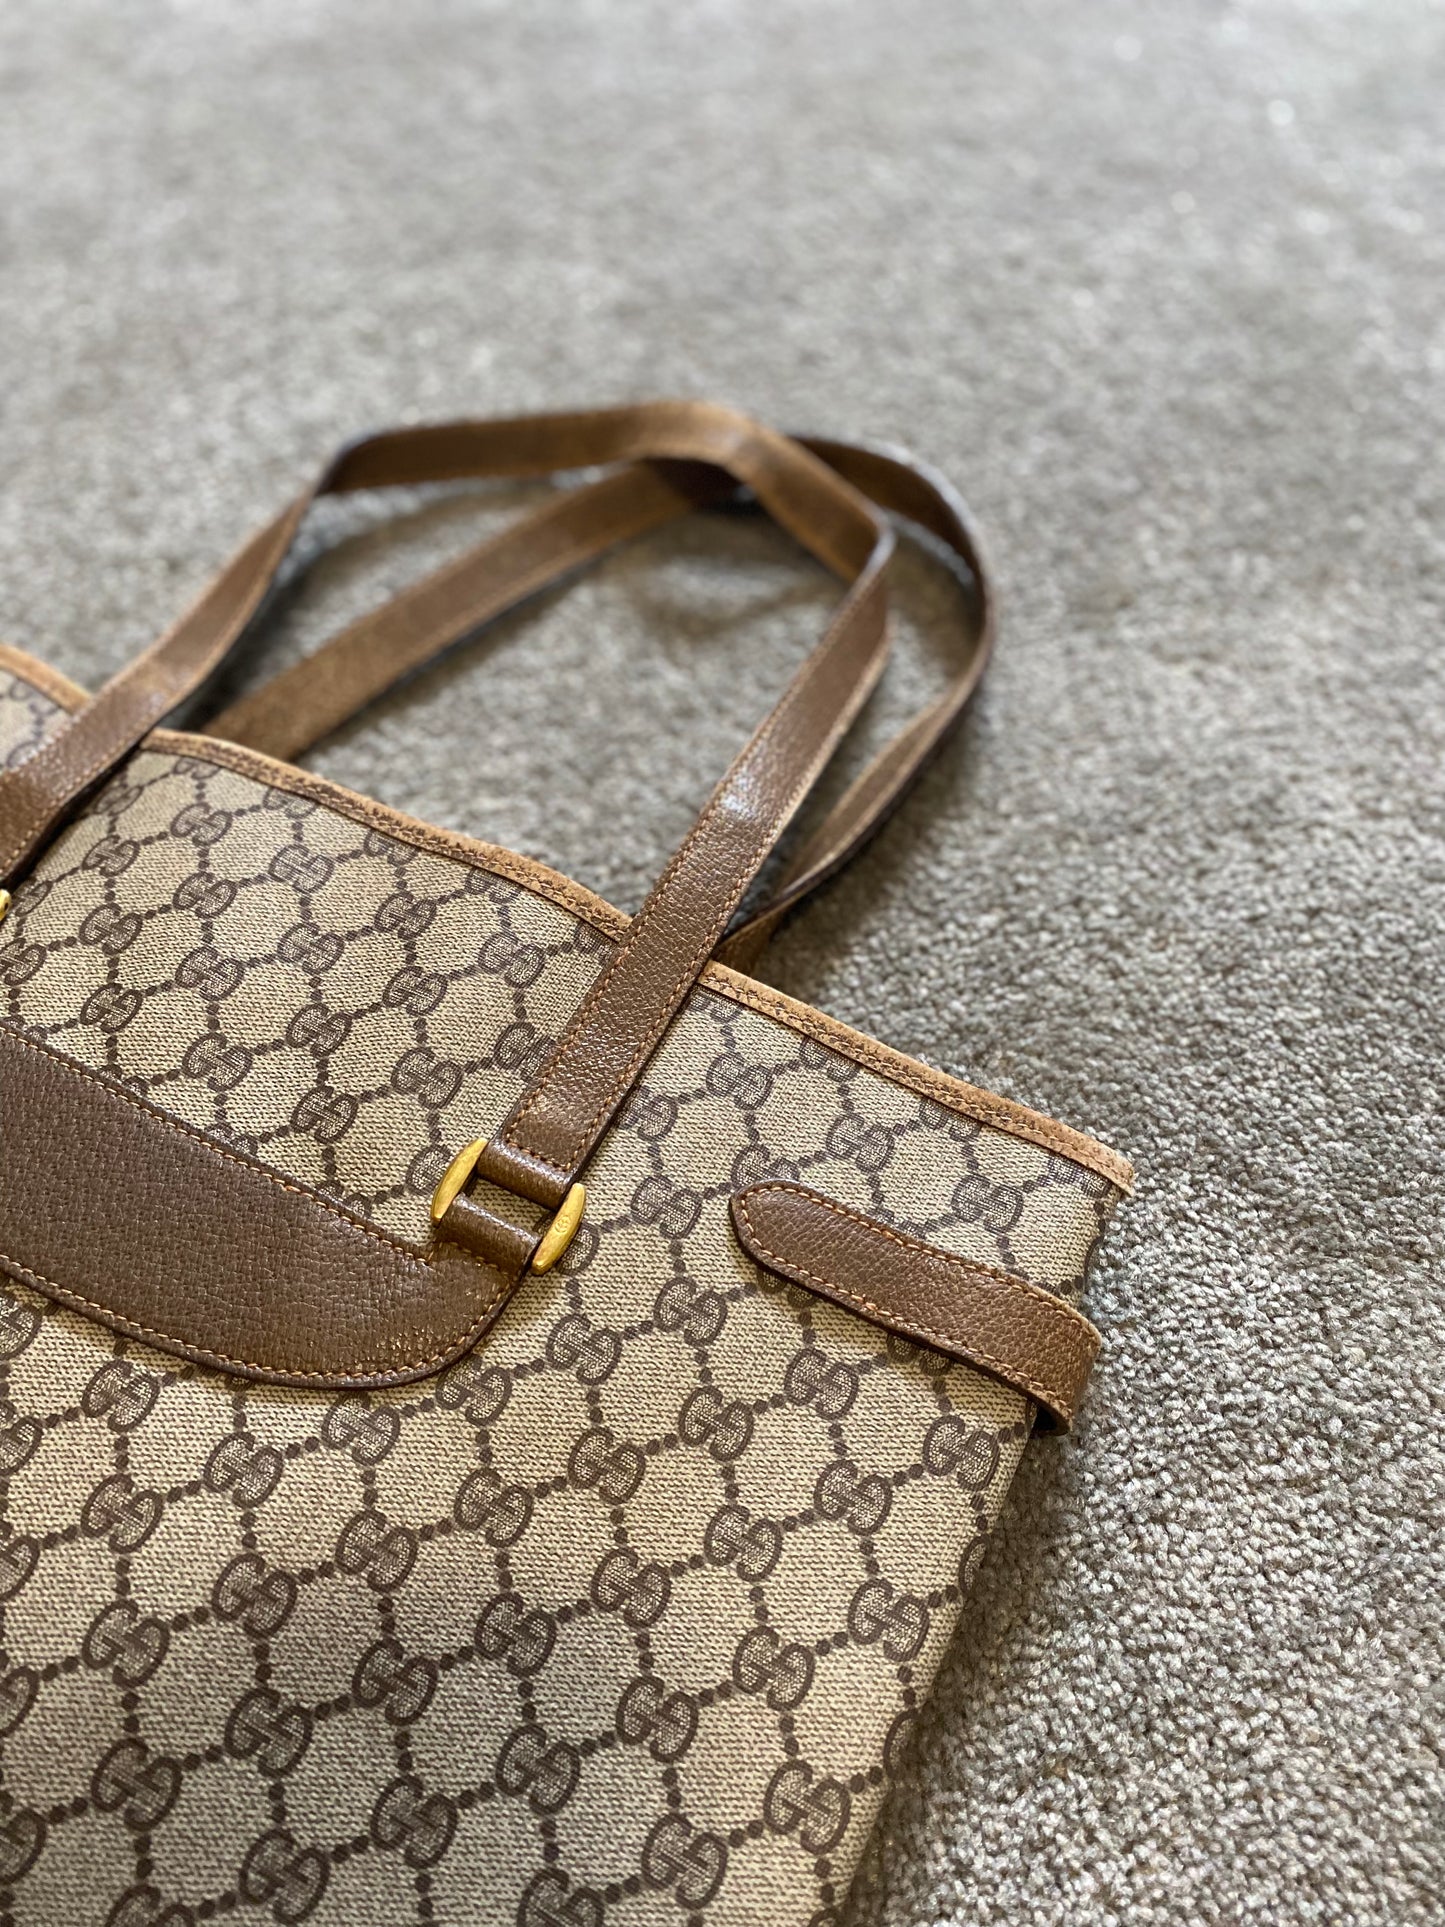 Gucci Canvas Tote Bag